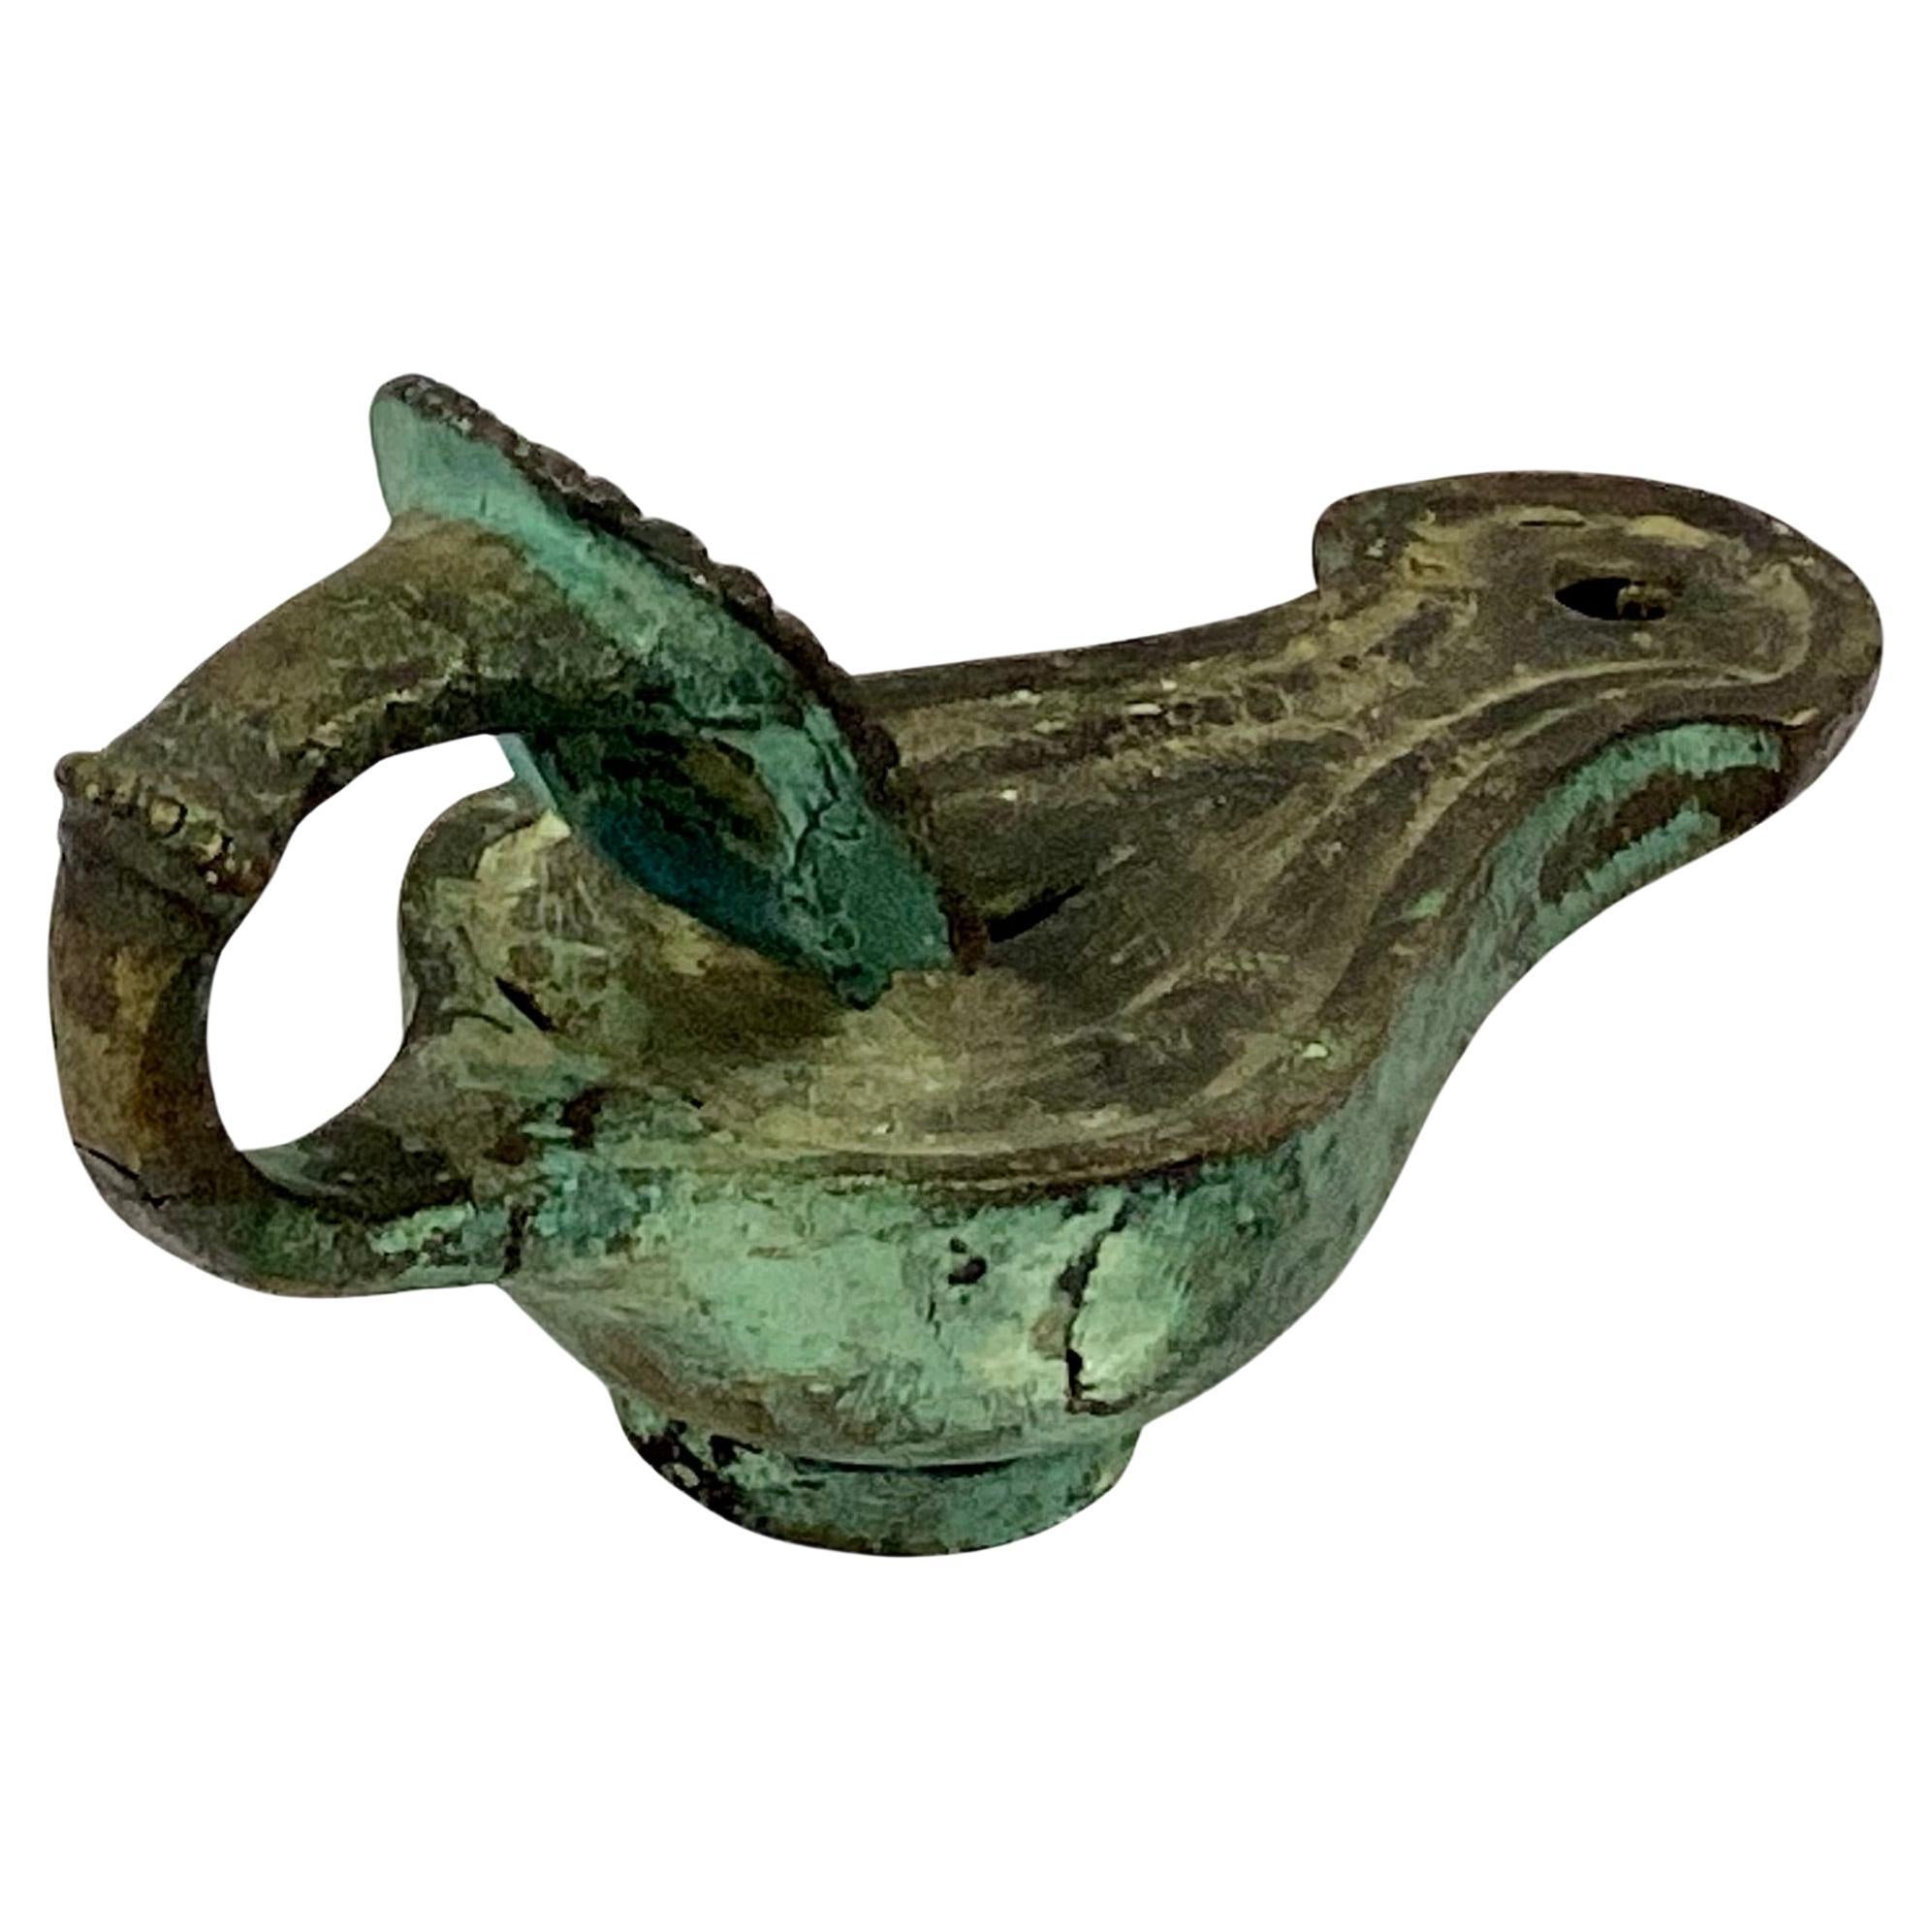 Rare lampe à huile en bronze coulé de la Grande Tour romaine, avec un corps en forme de poire menant à un bec courbé. La poignée a un masque de théâtre avec des traits expressifs et des cheveux bouclés serrés. Les lampes à huile étaient remplies